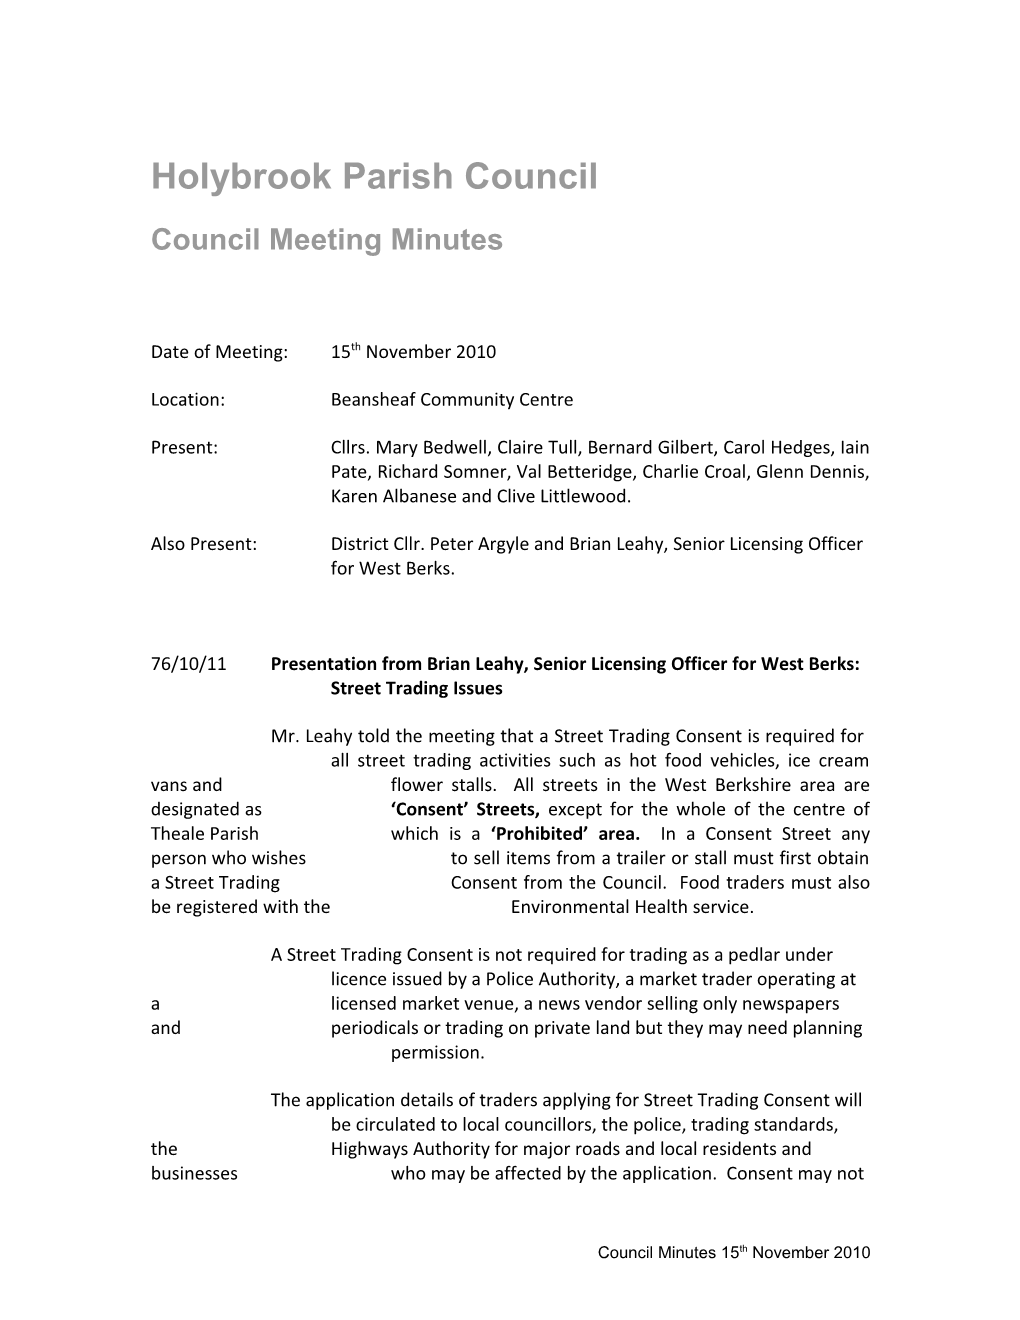 Holybrook Parish Council s1